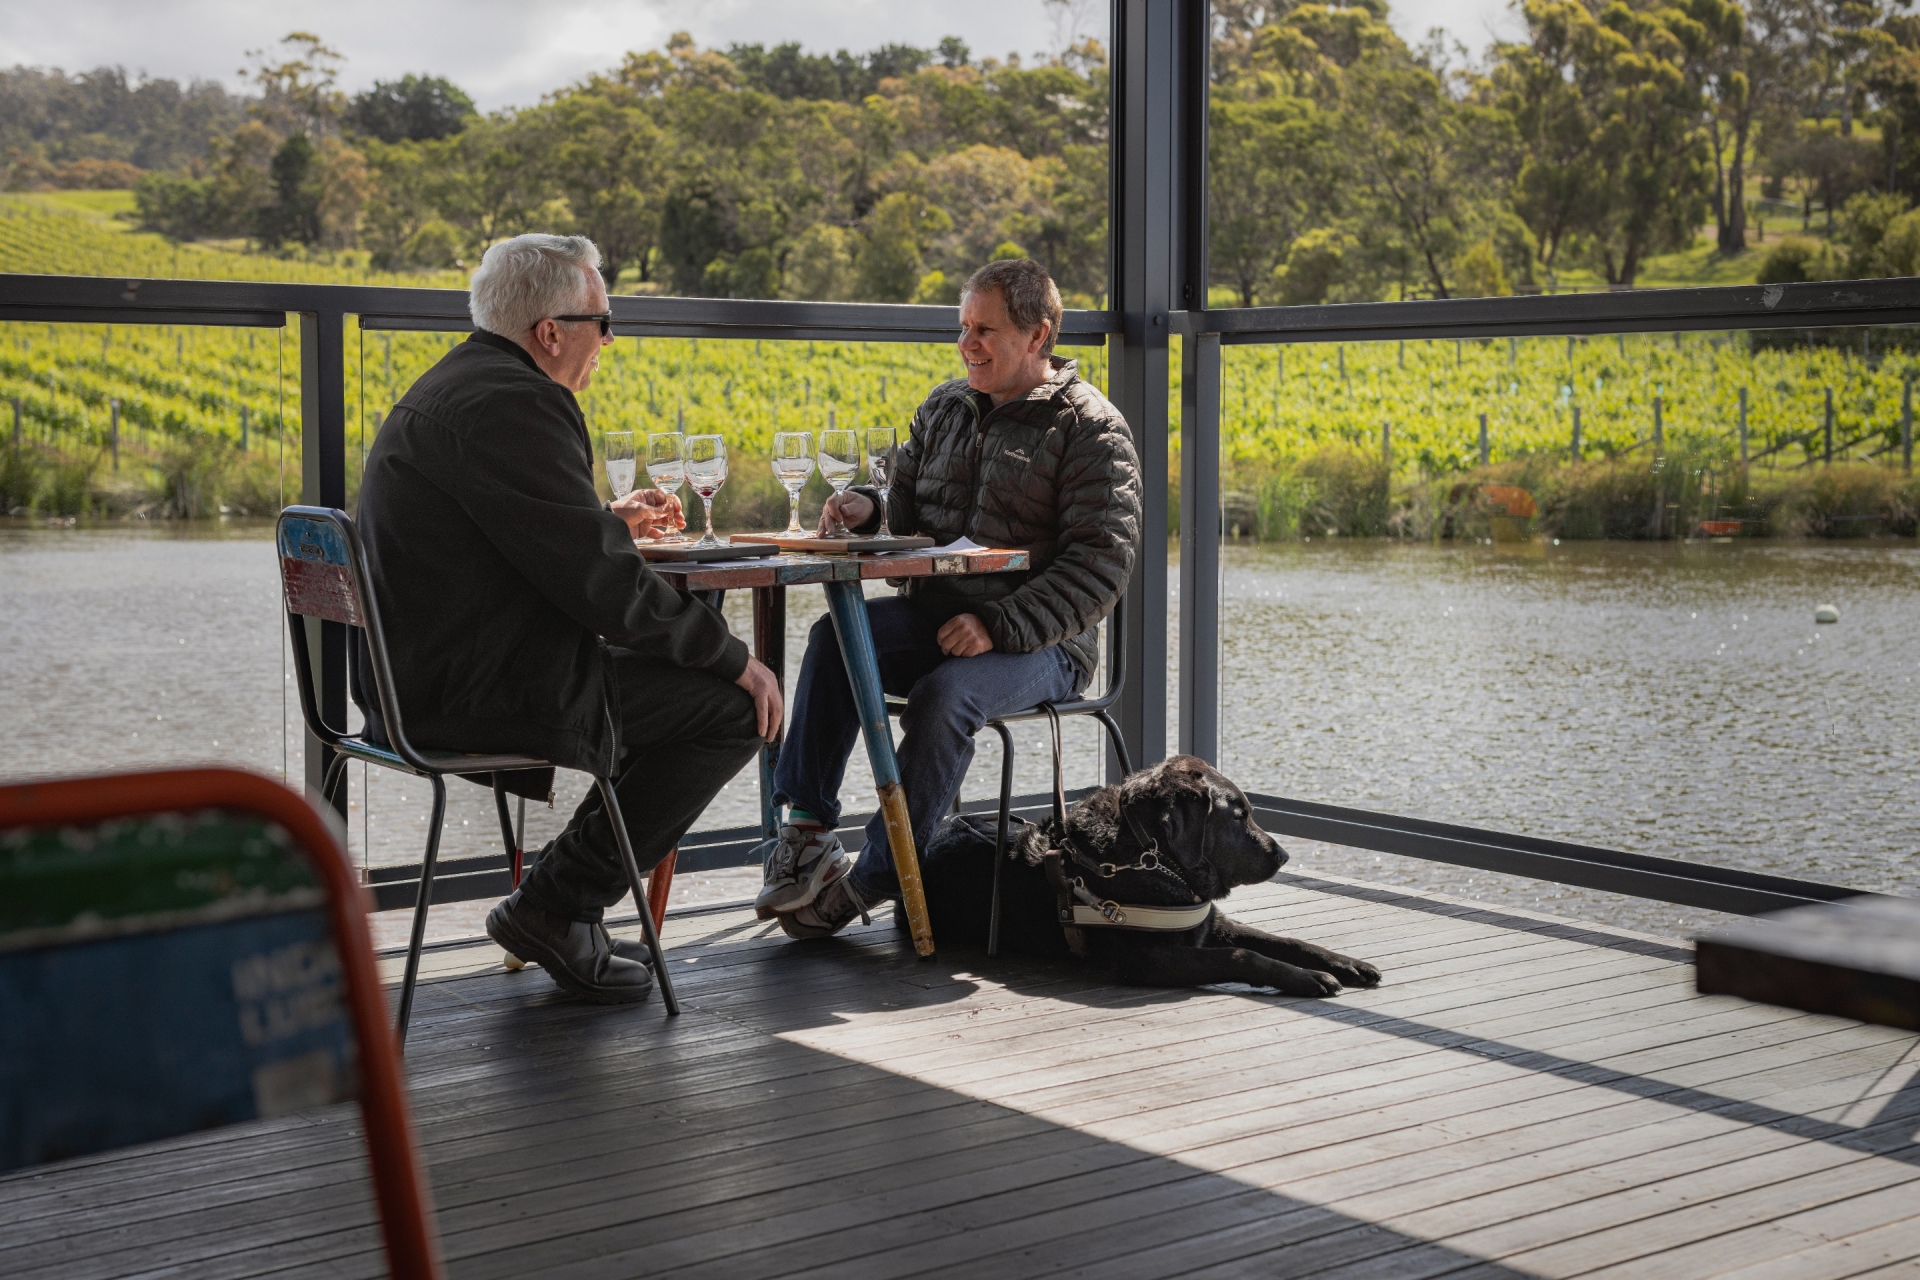 塔斯马尼亚州，里奇蒙，普德莱达克葡萄园，两名男子坐在葡萄园里品尝葡萄酒，带着一只导盲犬 © Deanna Bond 版权所有